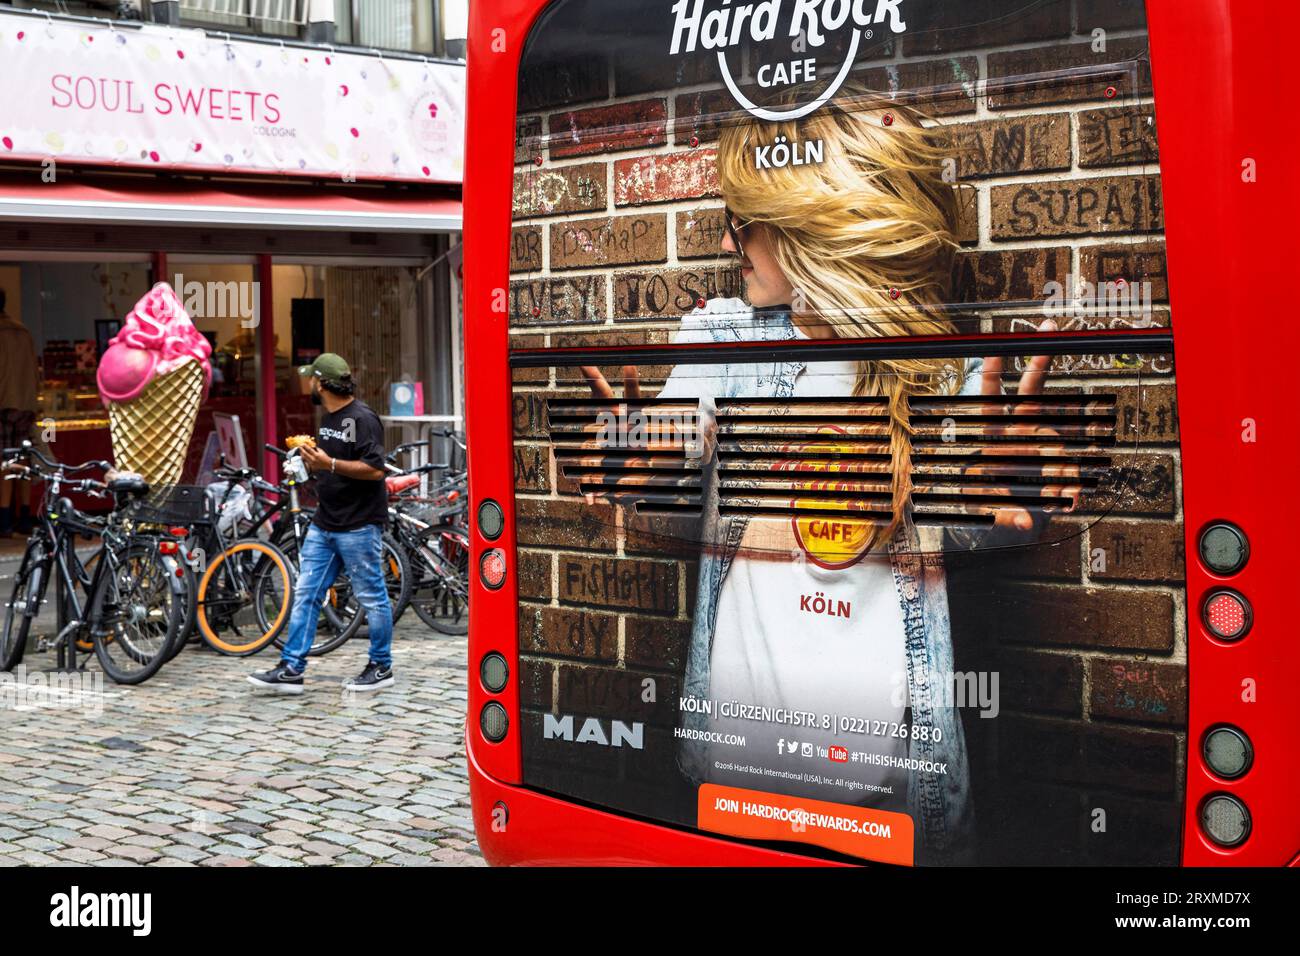 Werbung für das Hard Rock Café in einem Sightseeing-Bus, großer Eisstand vor einem Eisdiele auf der Burgmauer bei Dom, Ger Stockfoto